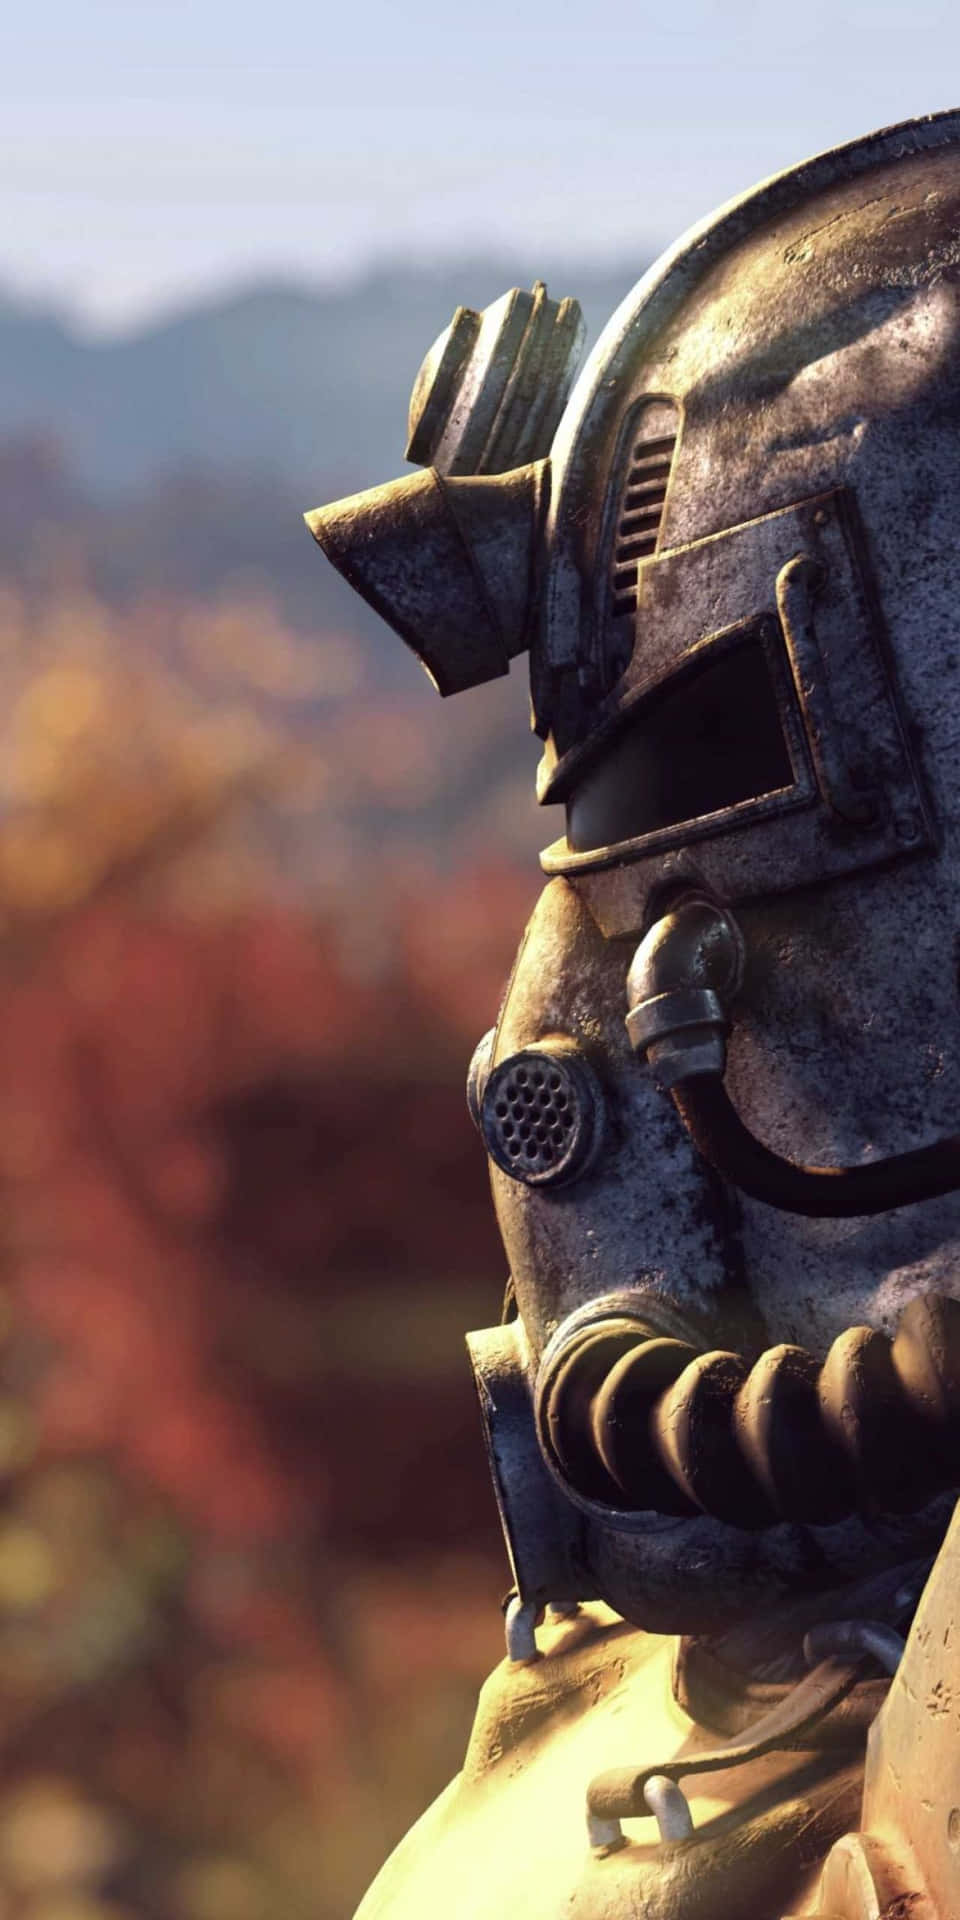 Preparatia Esplorare Wasteland In Fallout 76 Con Il Pixel 3